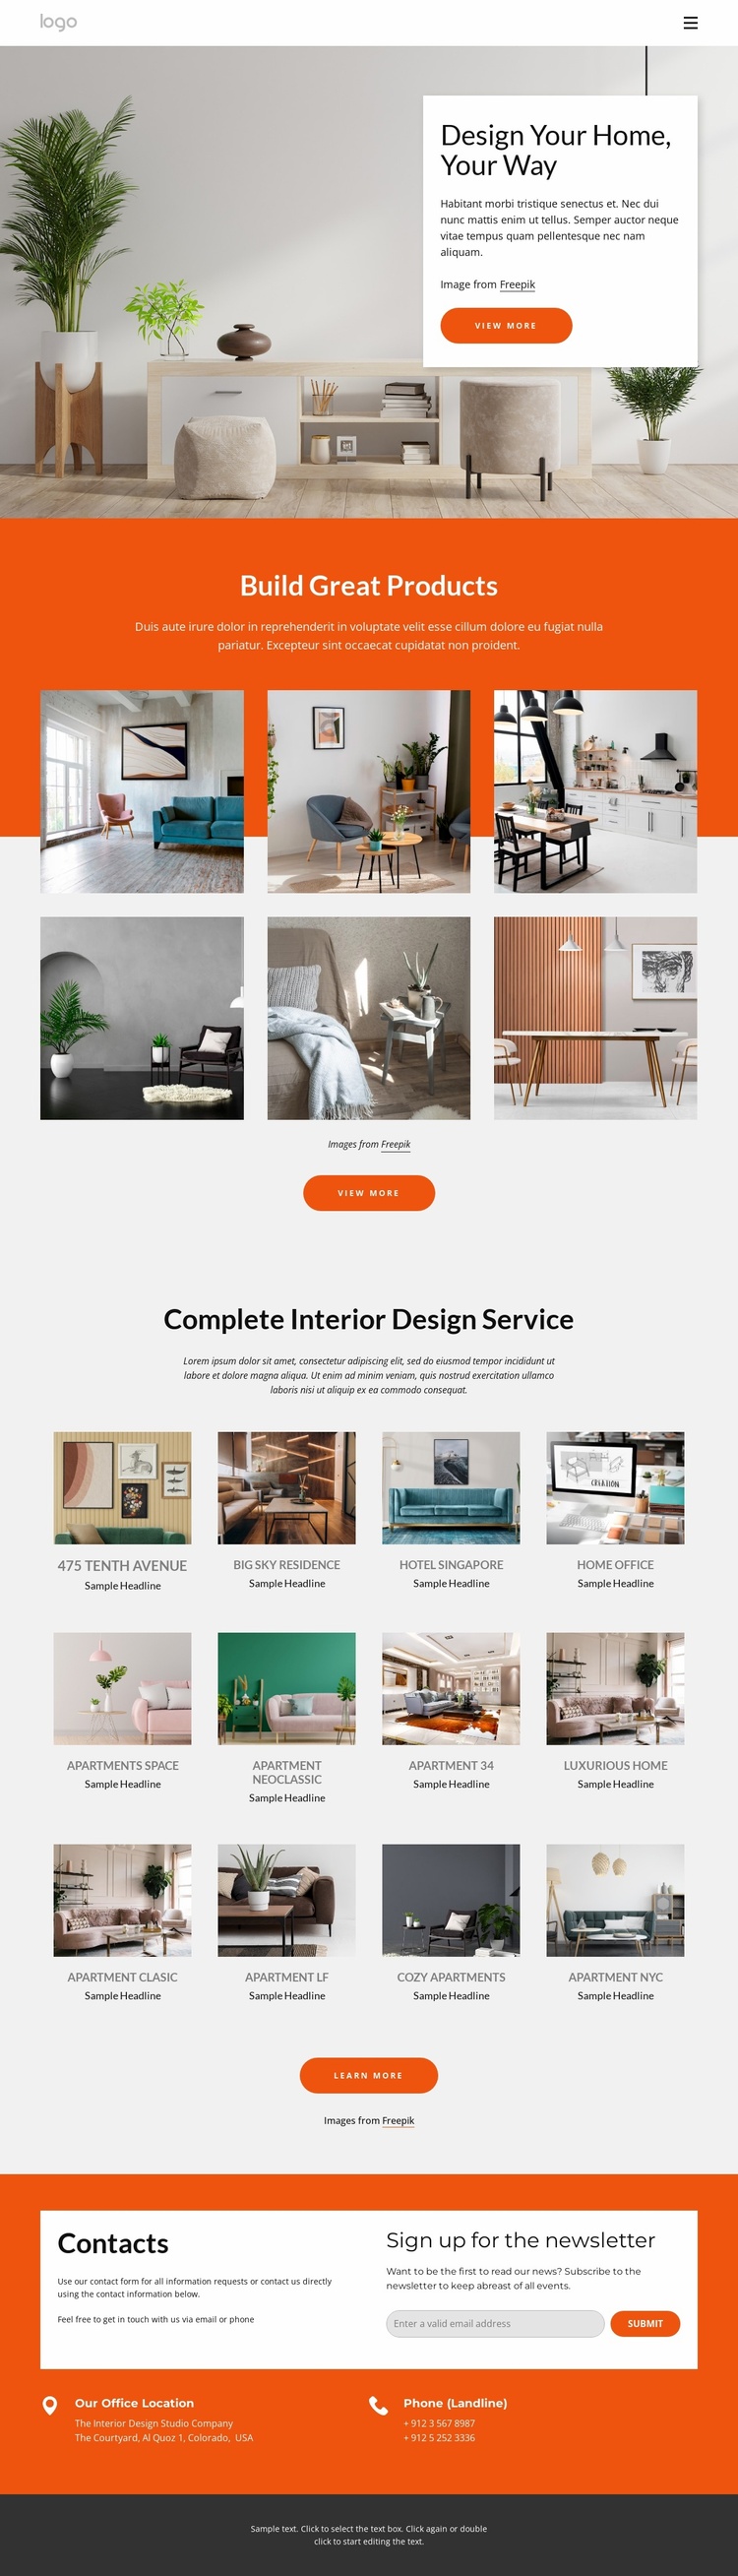 Interior design portfolio Website Template